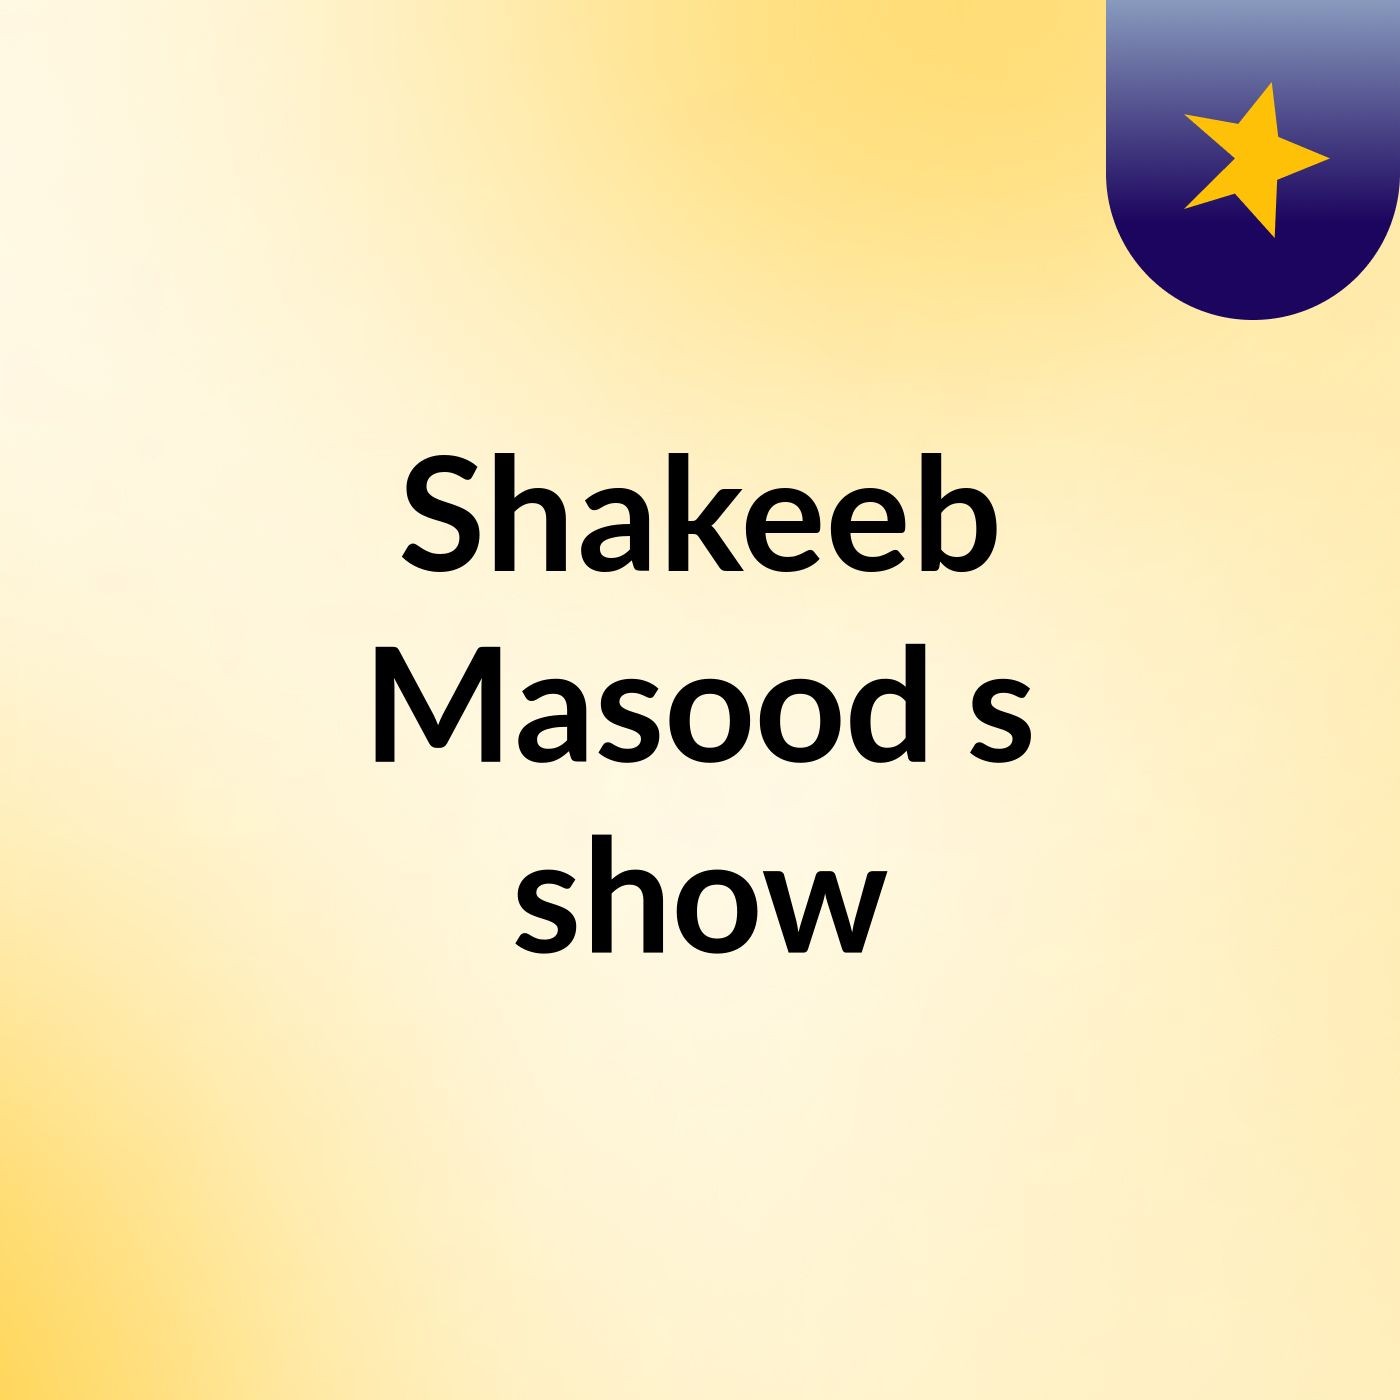 Shakeeb Masood's show